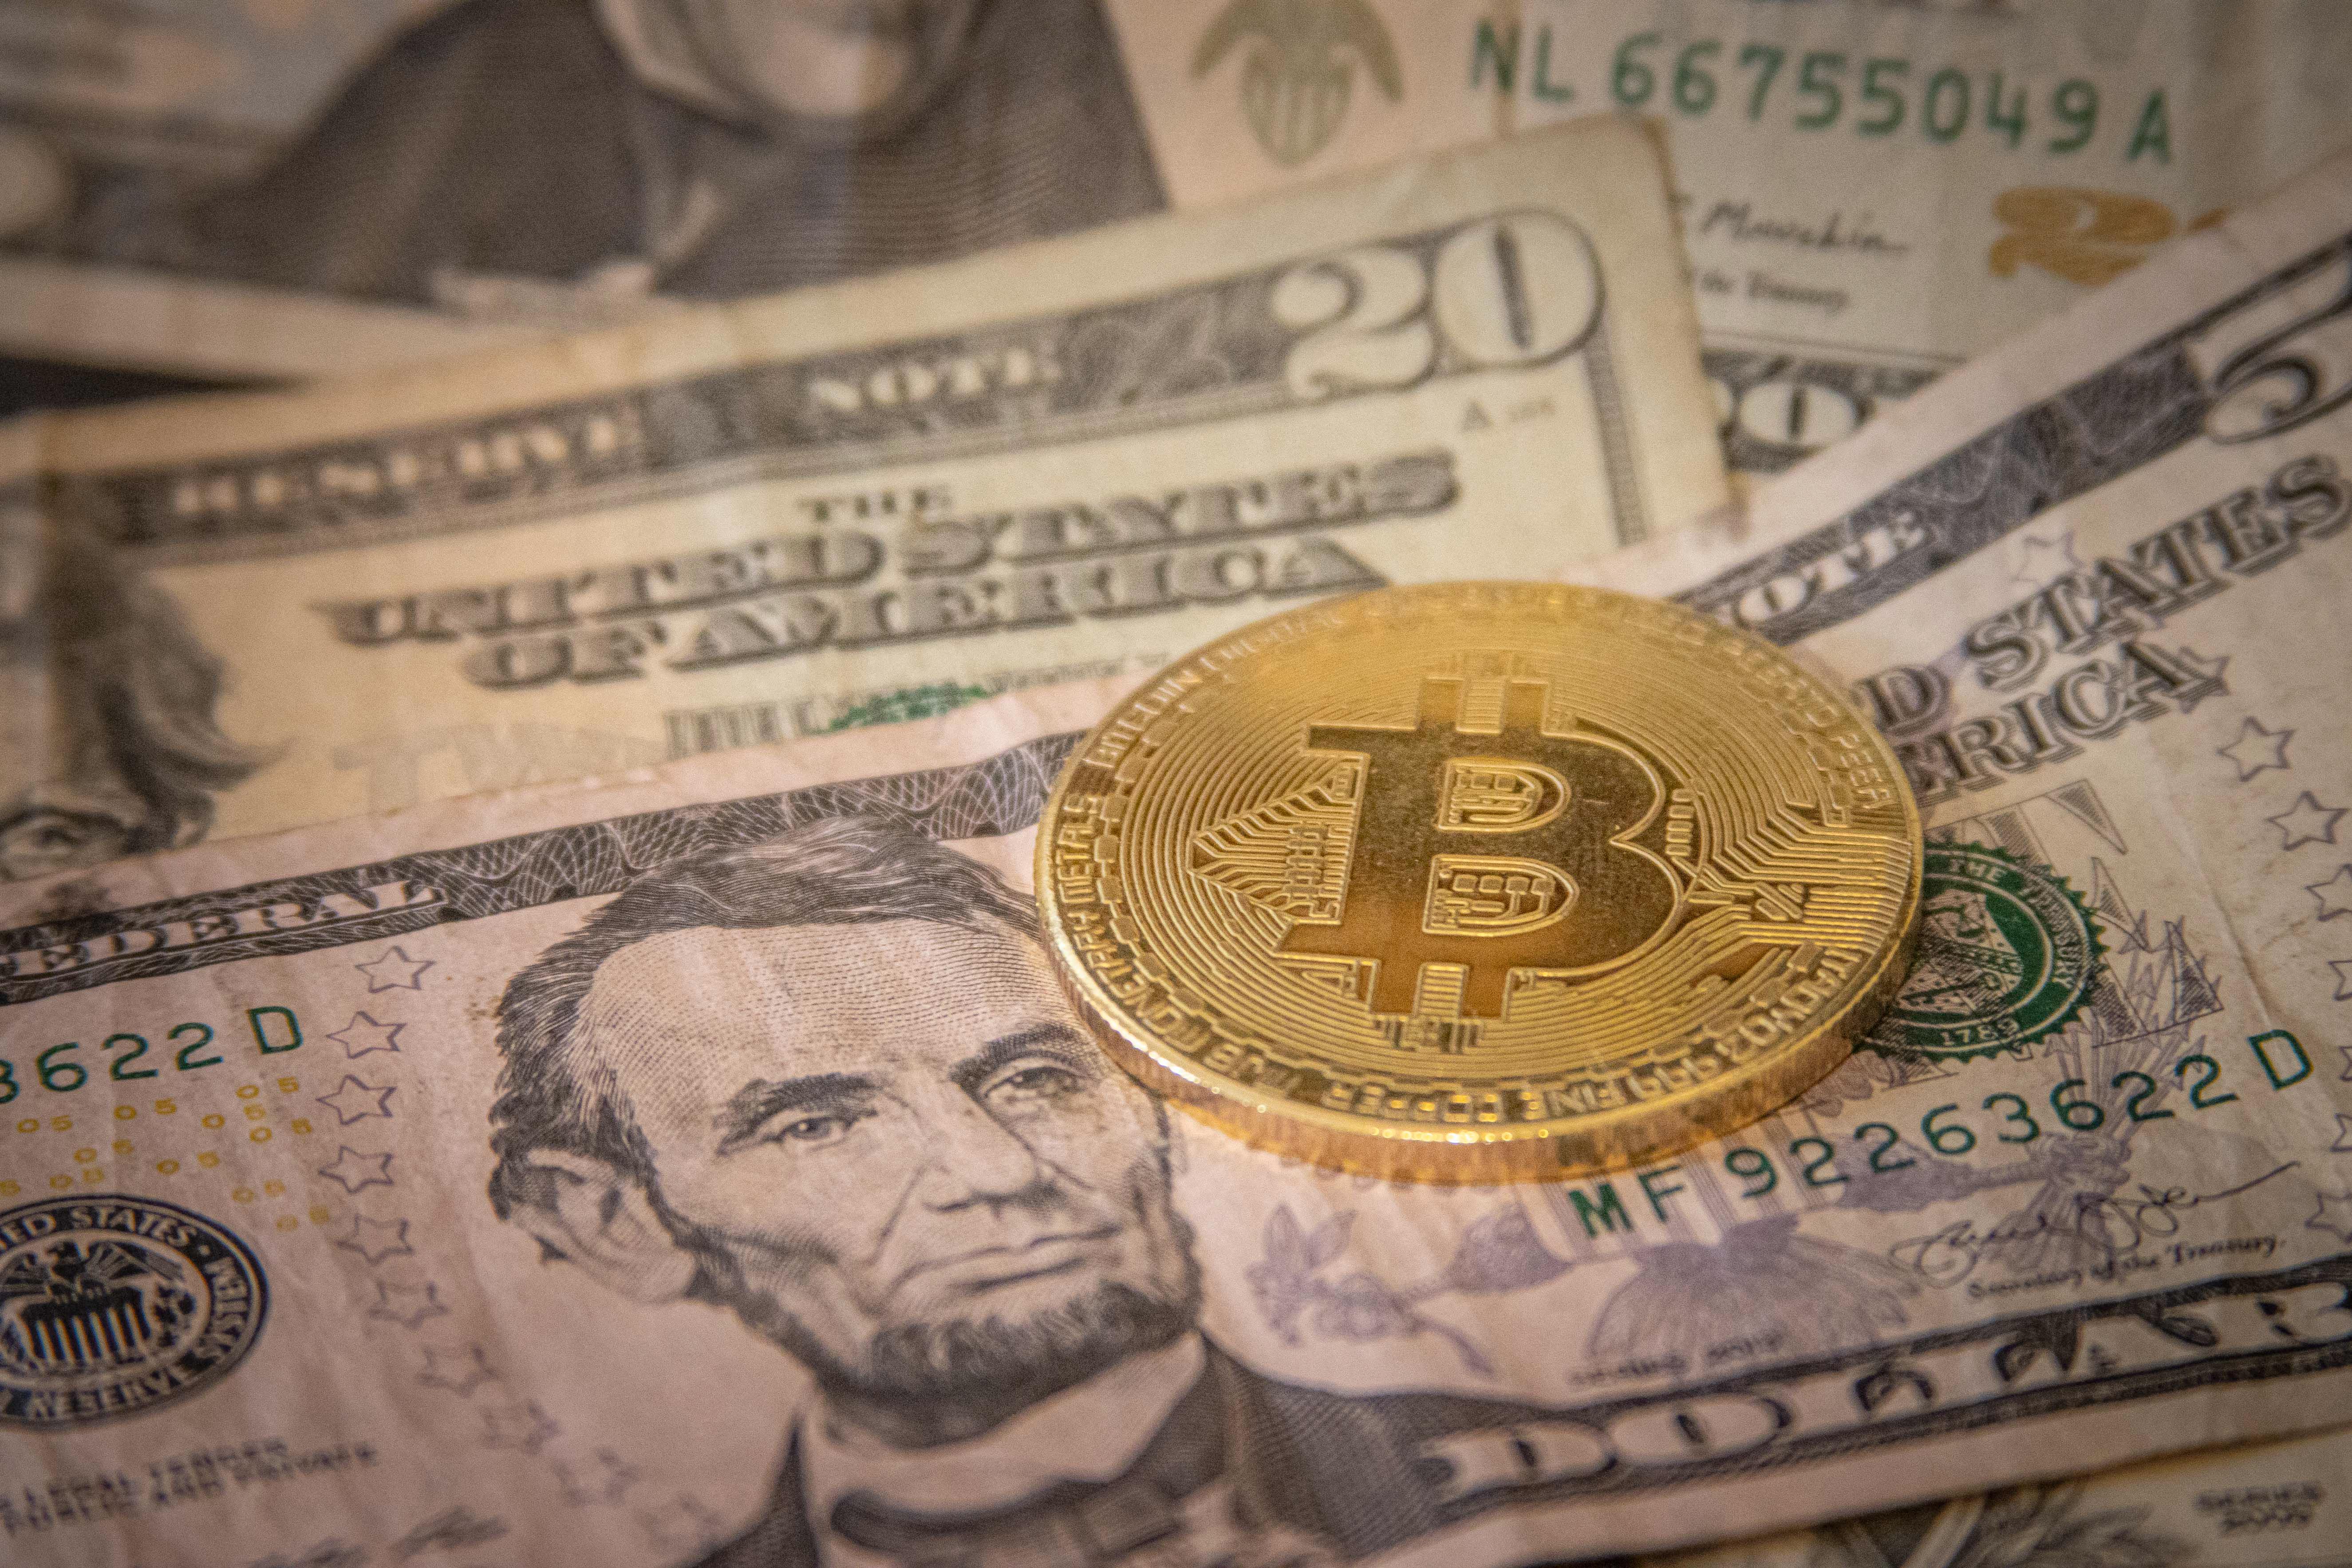 A gazdagok ráugrottak a bitcoinra, mert már az is biztosabbnak tűnik a pénznél